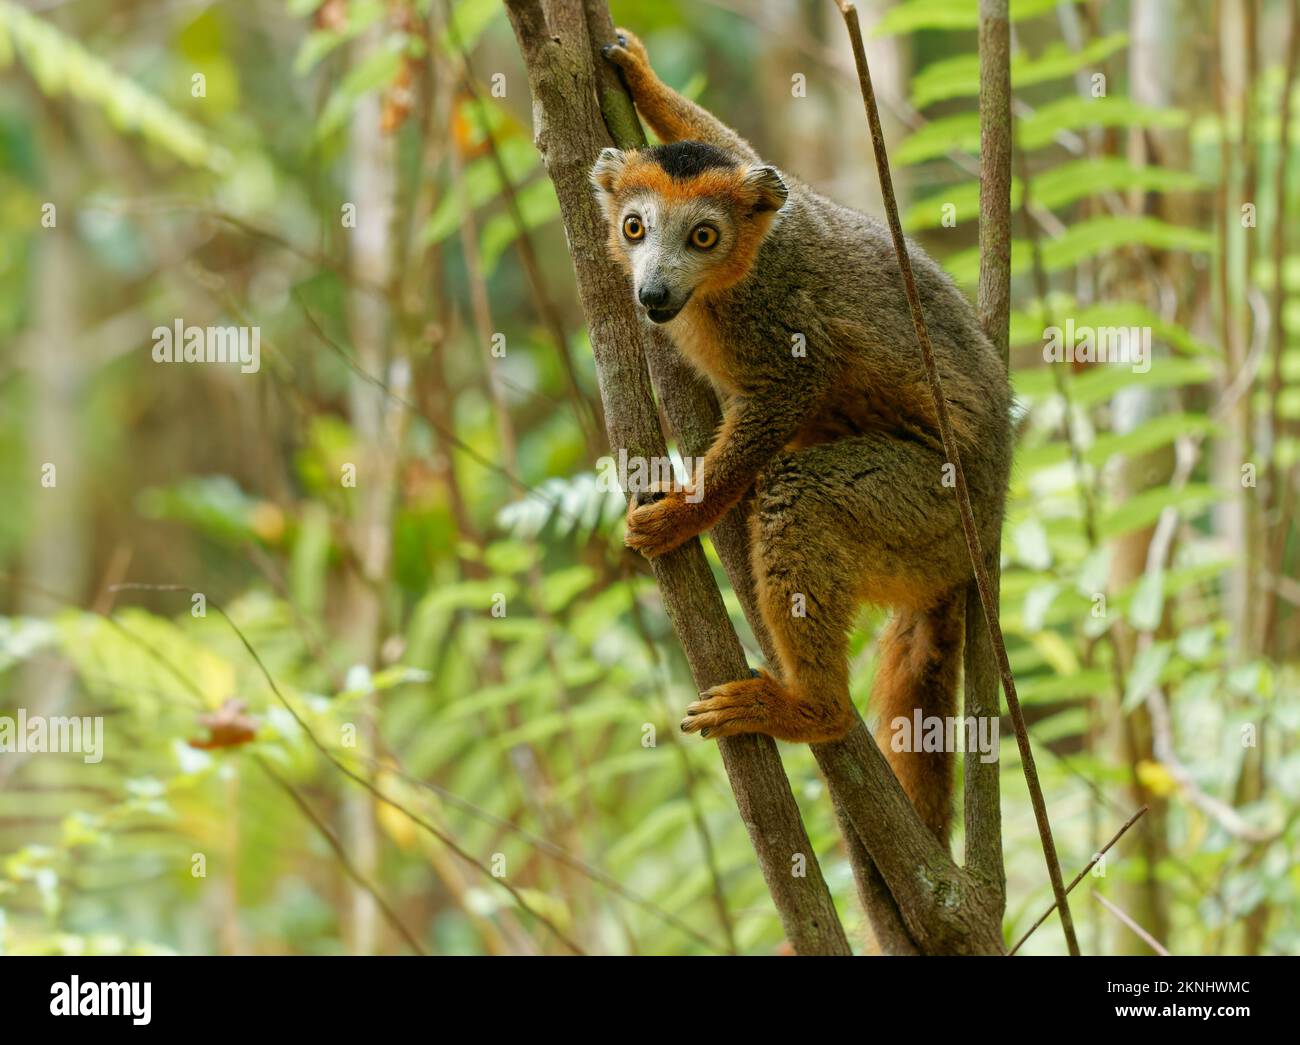 Lemur coronado - Eulemur coronatus endémico de los bosques caducifolios secos del extremo norte de Madagascar, come una dieta de flores, frutos, y hojas, simio Foto de stock